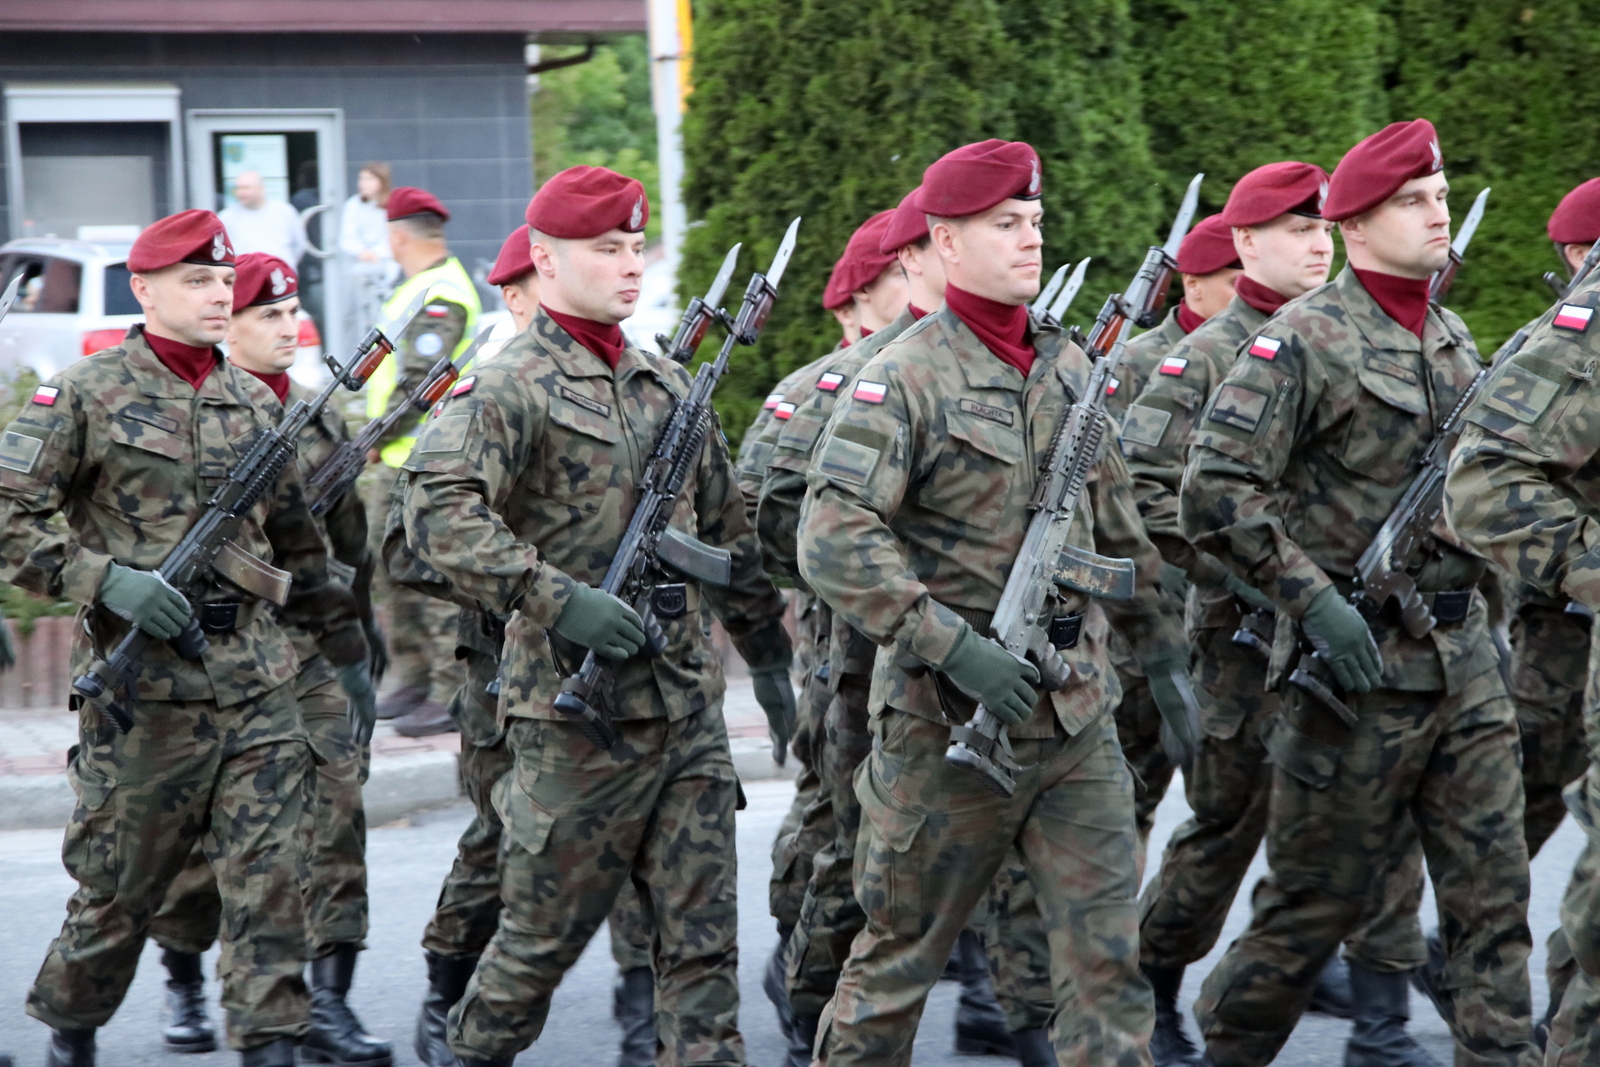 Obecna była również kompania honorowa 6 Batalionu Powietrznodesantowego w Gliwicach. W trakcie capstrzyku oddano salwę honorową